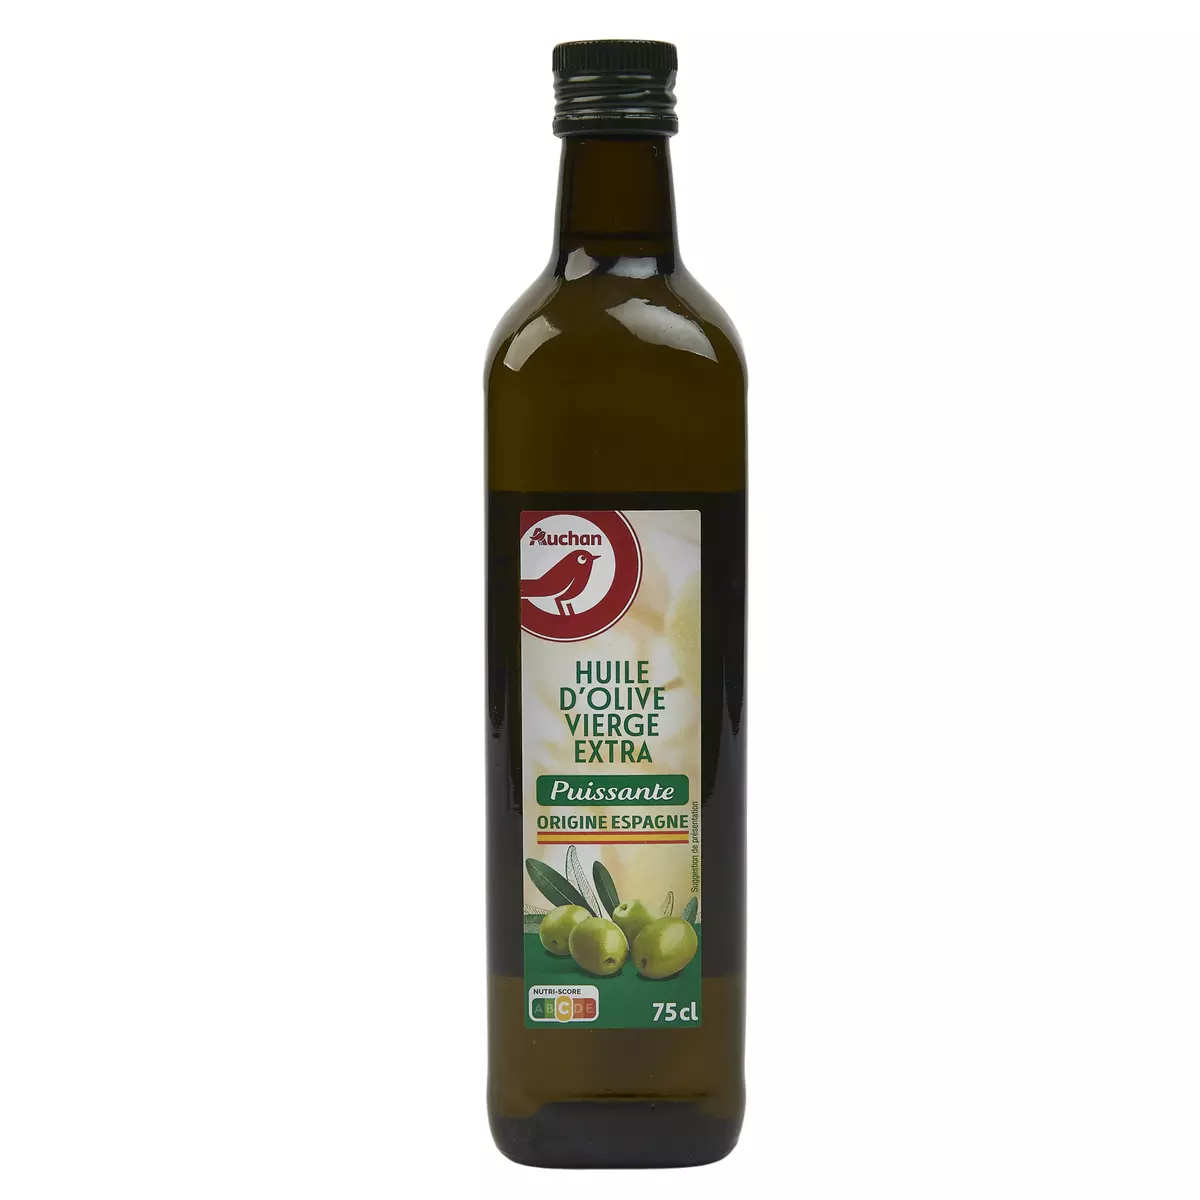 AUCHAN Huile d'olive vierge extra puissante origine Espagne 75cl